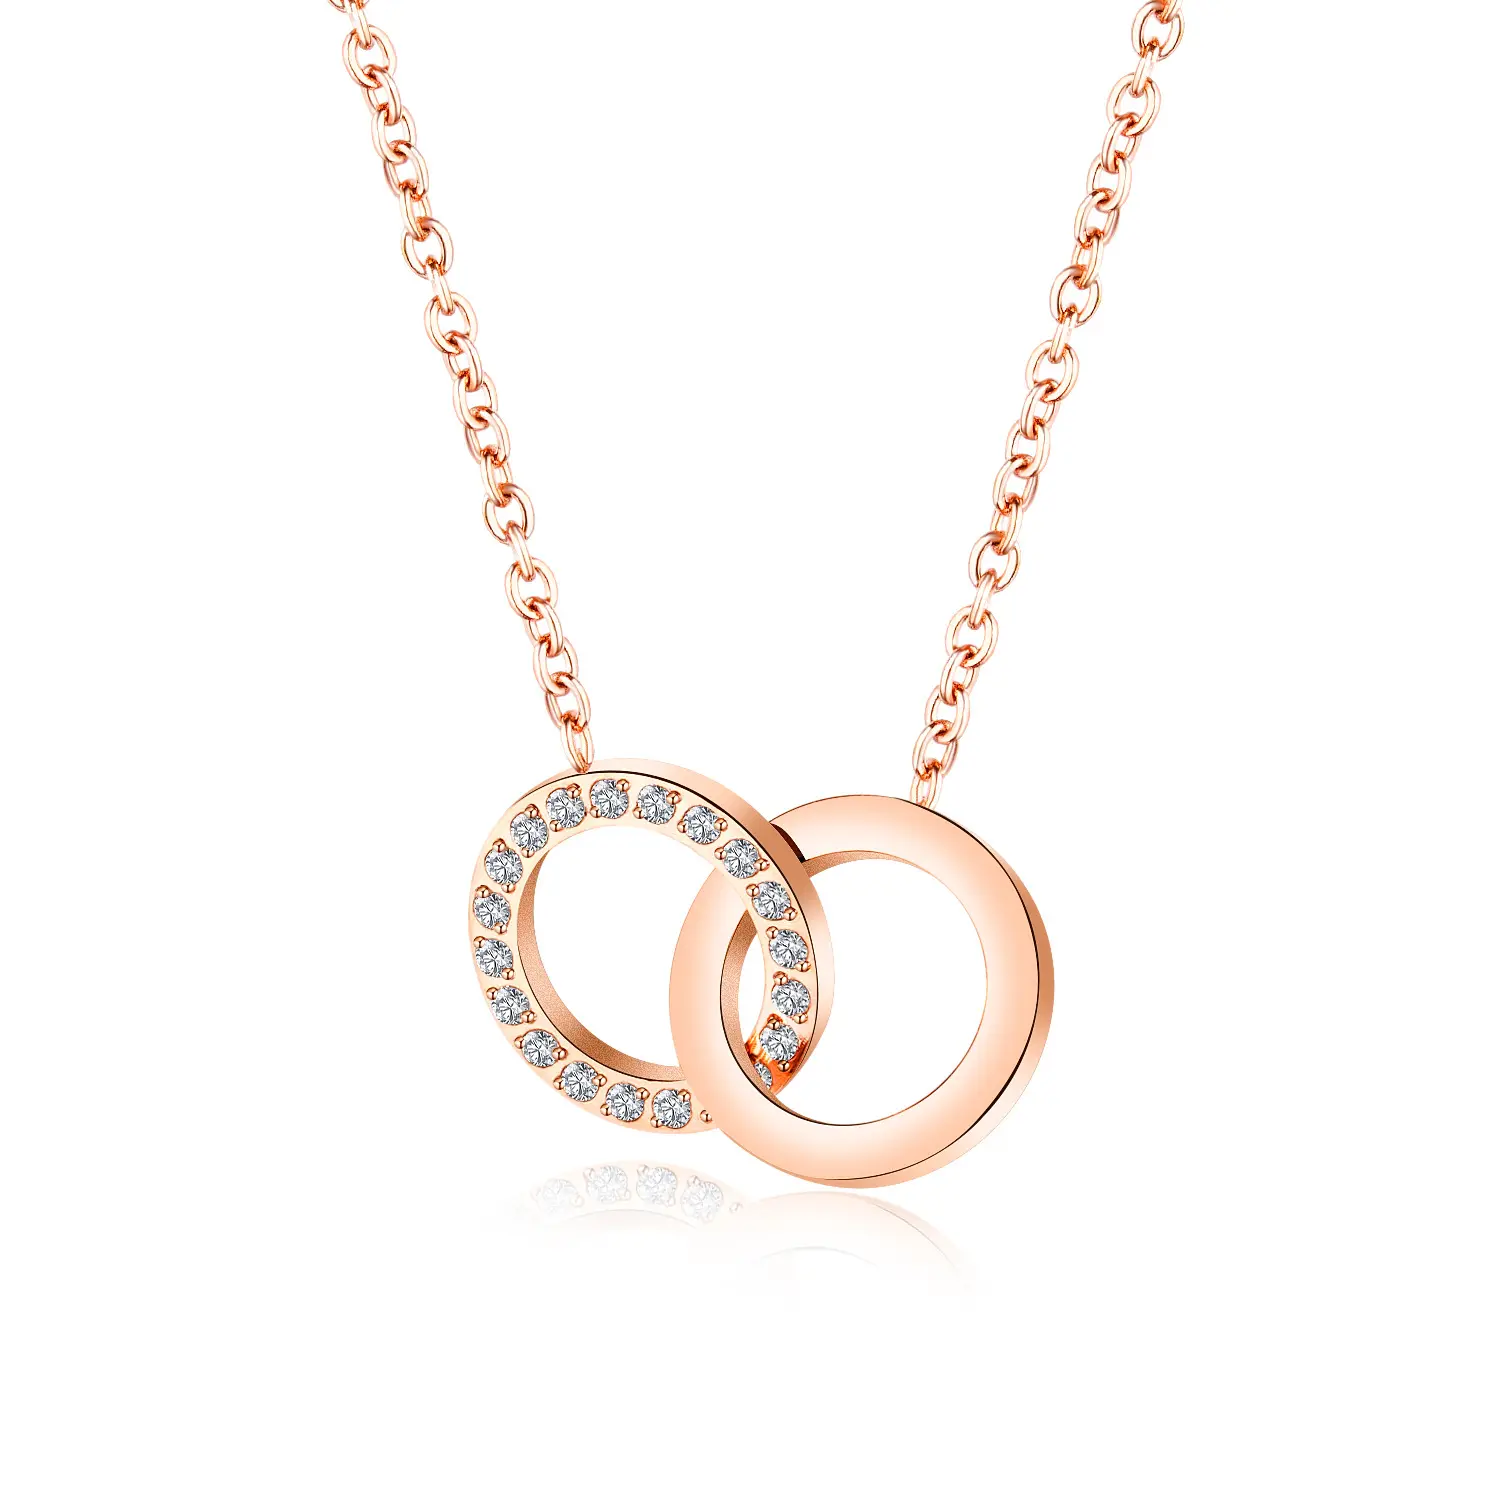 De moda dama collar moderno romántico enlace círculo colgante de cristal en plata y oro rosa las existencias de joyas de acero inoxidable